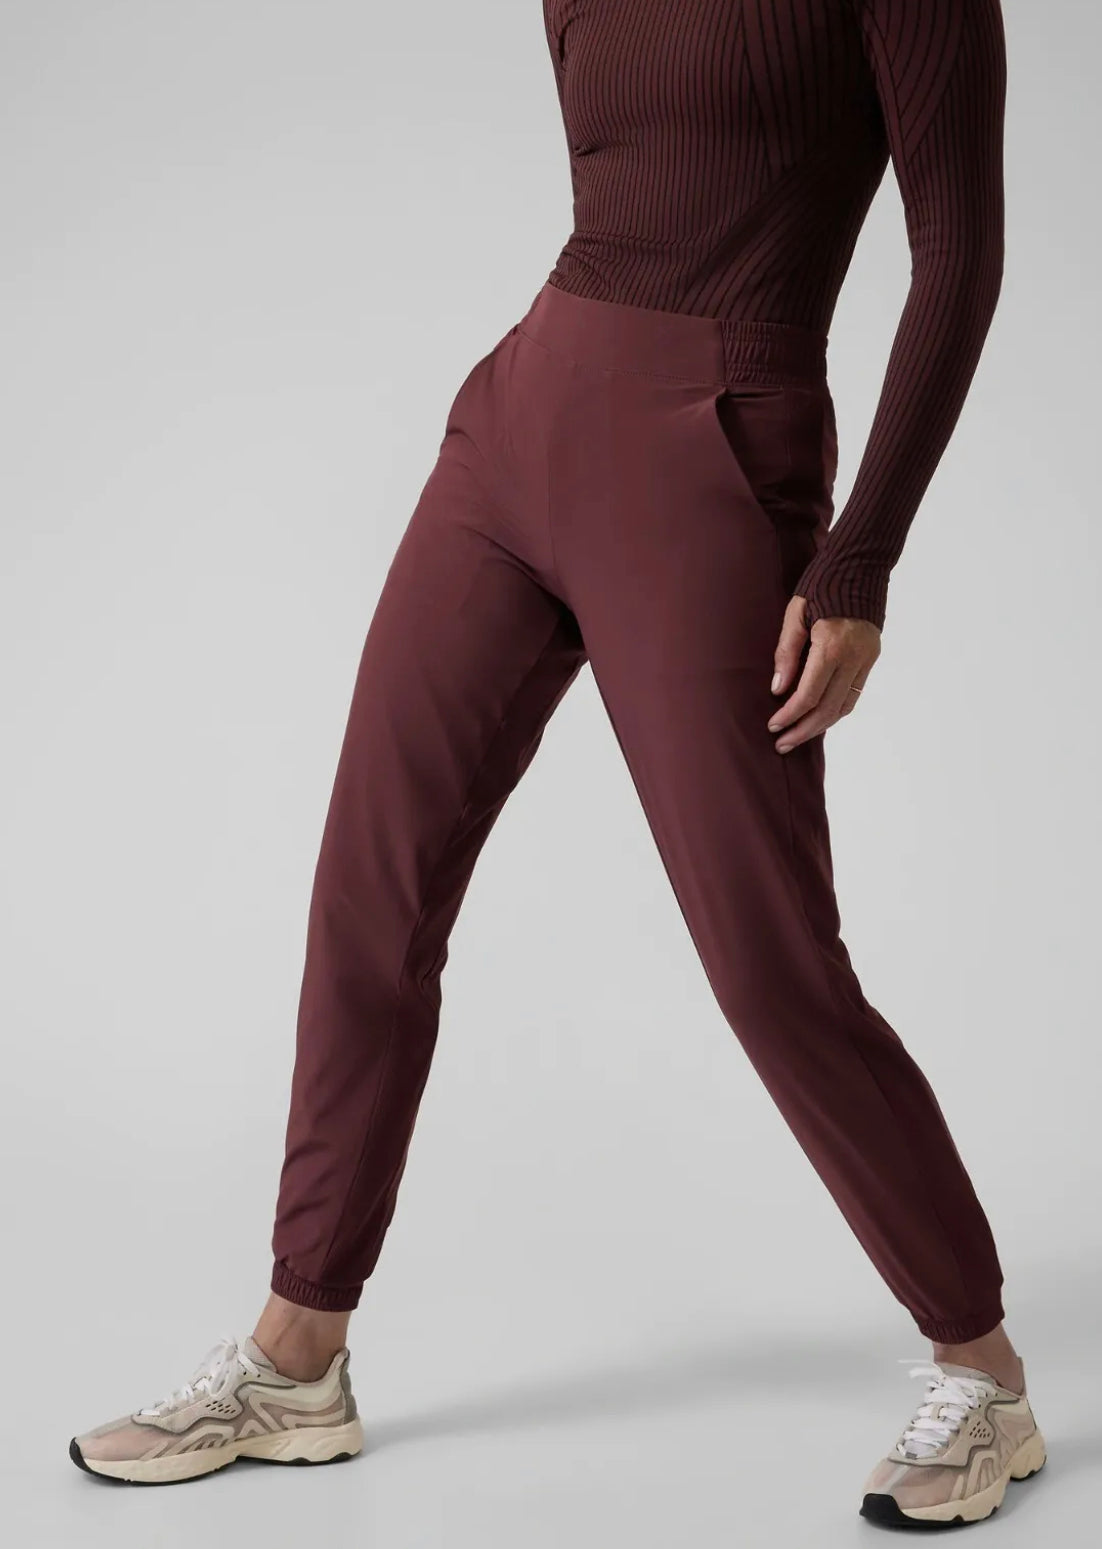 Athleta Taupe Brooklyn Textured Jogger Windowpane Plaid - Pants & Jumpsuits